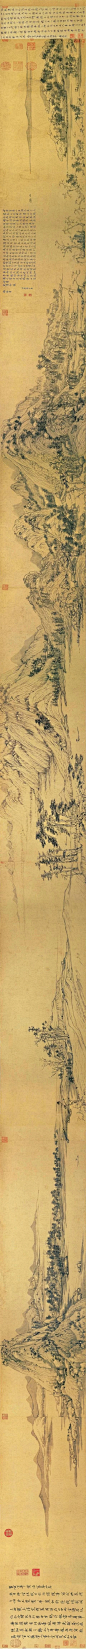 元·黄公望《富春山居图》

《富春山居图》，纵33厘米，横636.9厘米，纸本，水墨。始画于至正七年(1347)，于至正十年完成。该画于清代顺治年间曾遭火焚，断为两段，前半卷被另行装裱，重新定名为《剩山图》，现藏浙江省博物馆；后段较长称《无用师卷》，现藏台北故宫博物馆。是元代画坛宗师、“元四家”之首黄公望晚年的杰作，也是中国古代水墨山水画的巅峰之笔，在中国传统山水画中所取得的艺术成就，可谓空前绝后，历代莫及。